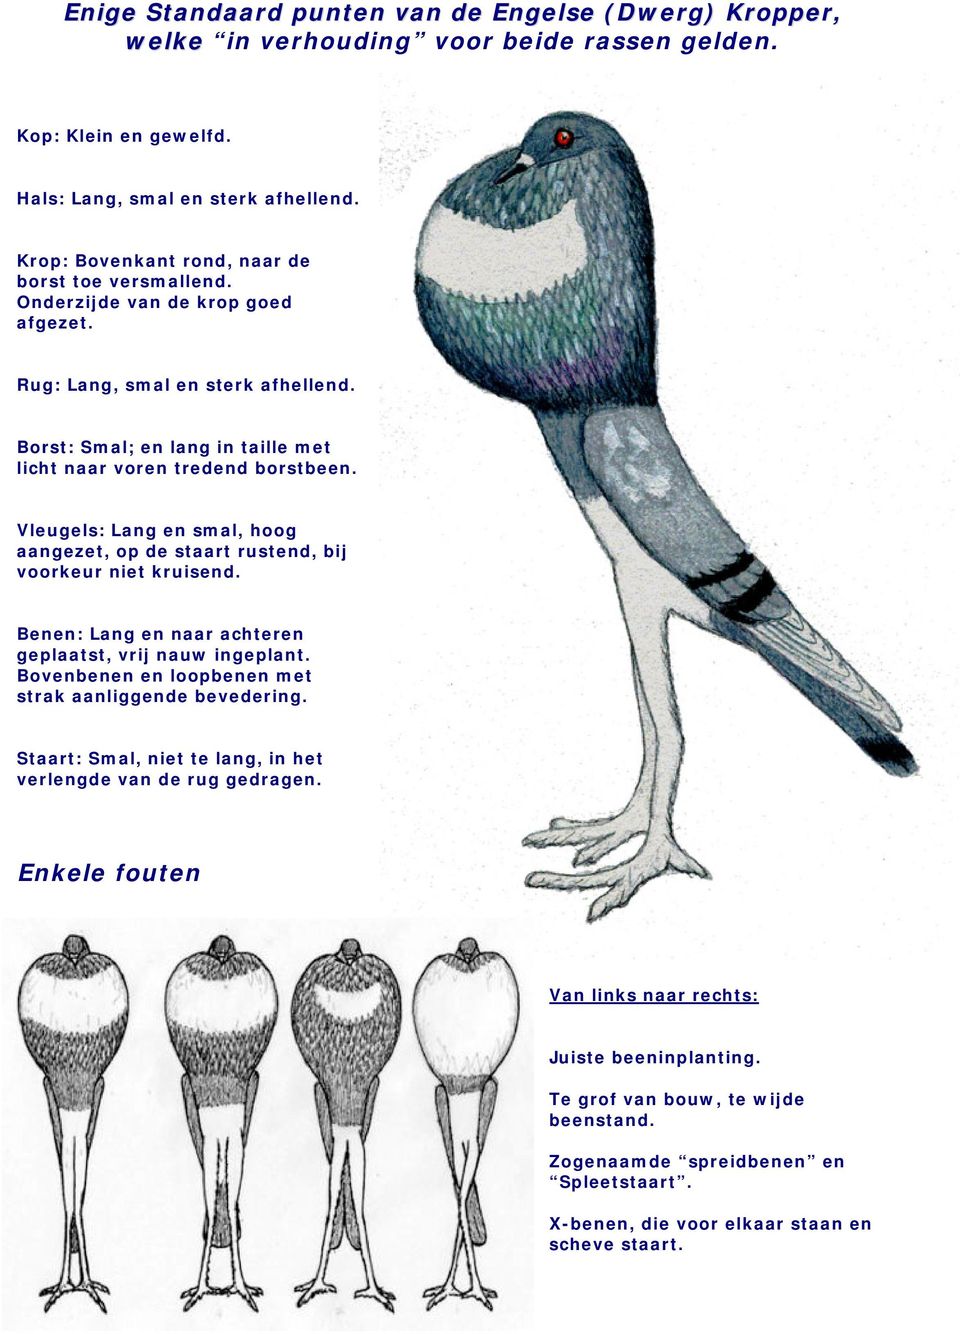 Vleugels: Lang en smal, hoog aangezet, op de staart rustend, bij voorkeur niet kruisend. Benen: Lang en naar achteren geplaatst, vrij nauw ingeplant.